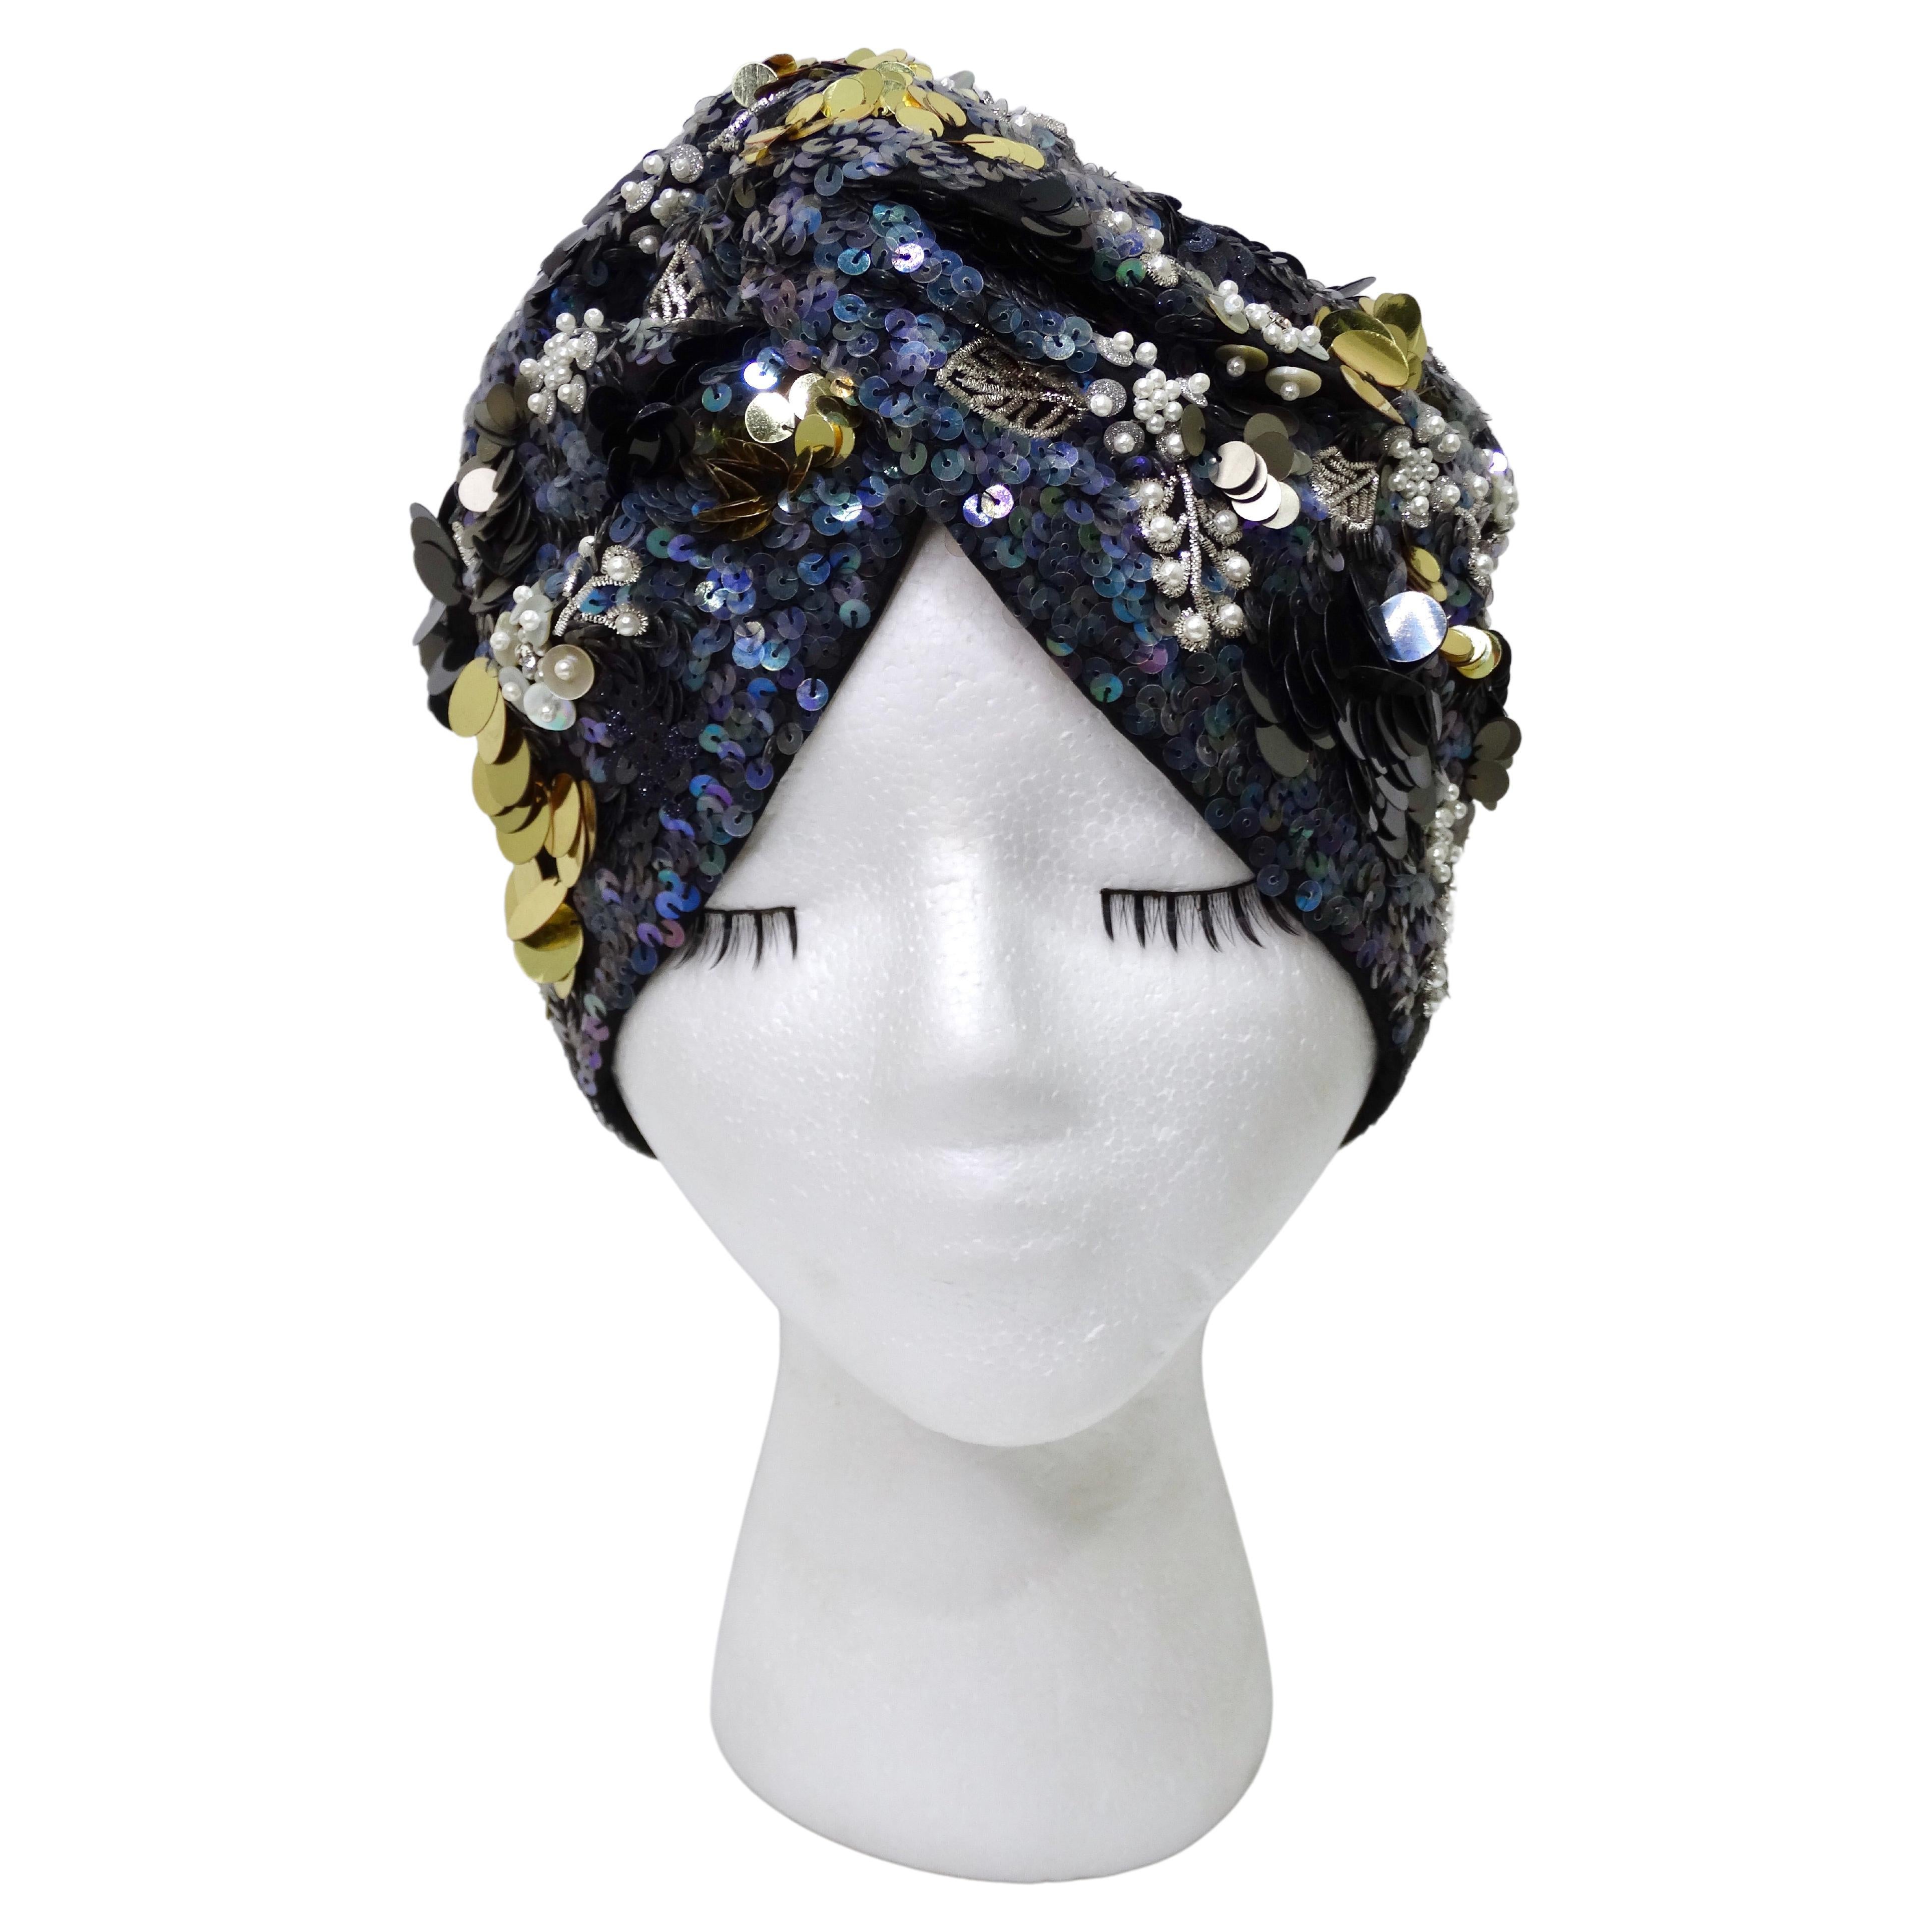 Dies ist ein wunderschöner und detailreicher Turban von Maryjane Claverol, der komplett mit großen und kleinen Pailletten und Perlen in sanften Farben wie Blau, Grau, Gold und Weiß verziert ist. Das macht jedes Outfit interessant und verleiht ihm